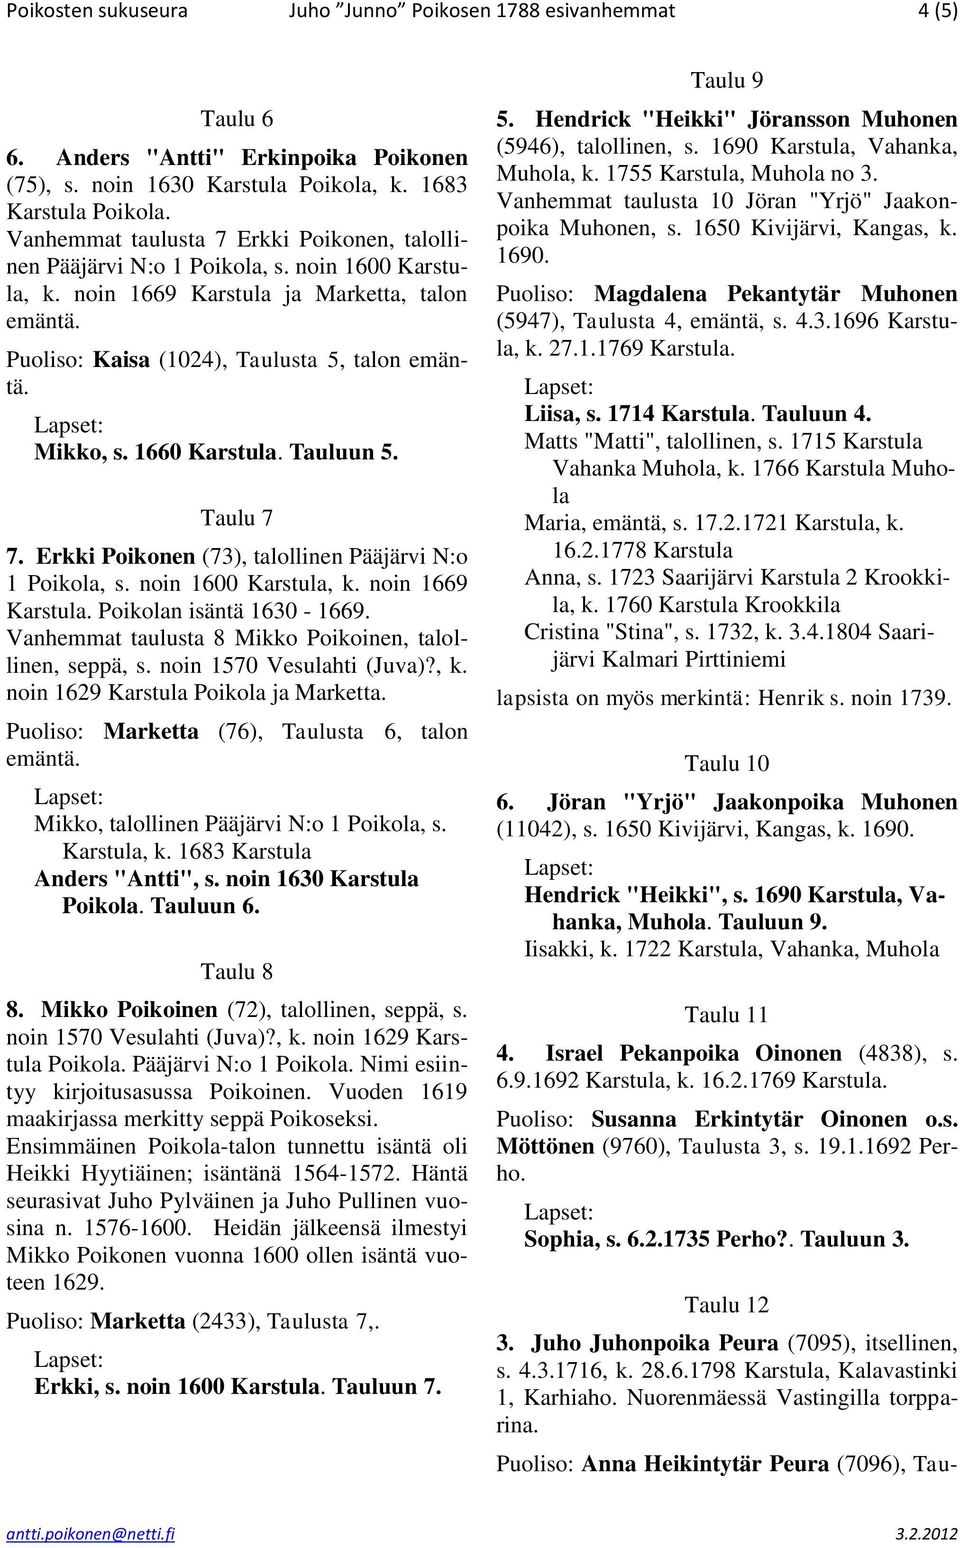 Mikko, s. 1660 Karstula. Tauluun 5. Taulu 7 7. Erkki Poikonen (73), talollinen Pääjärvi N:o 1 Poikola, s. noin 1600 Karstula, k. noin 1669 Karstula. Poikolan isäntä 1630-1669.